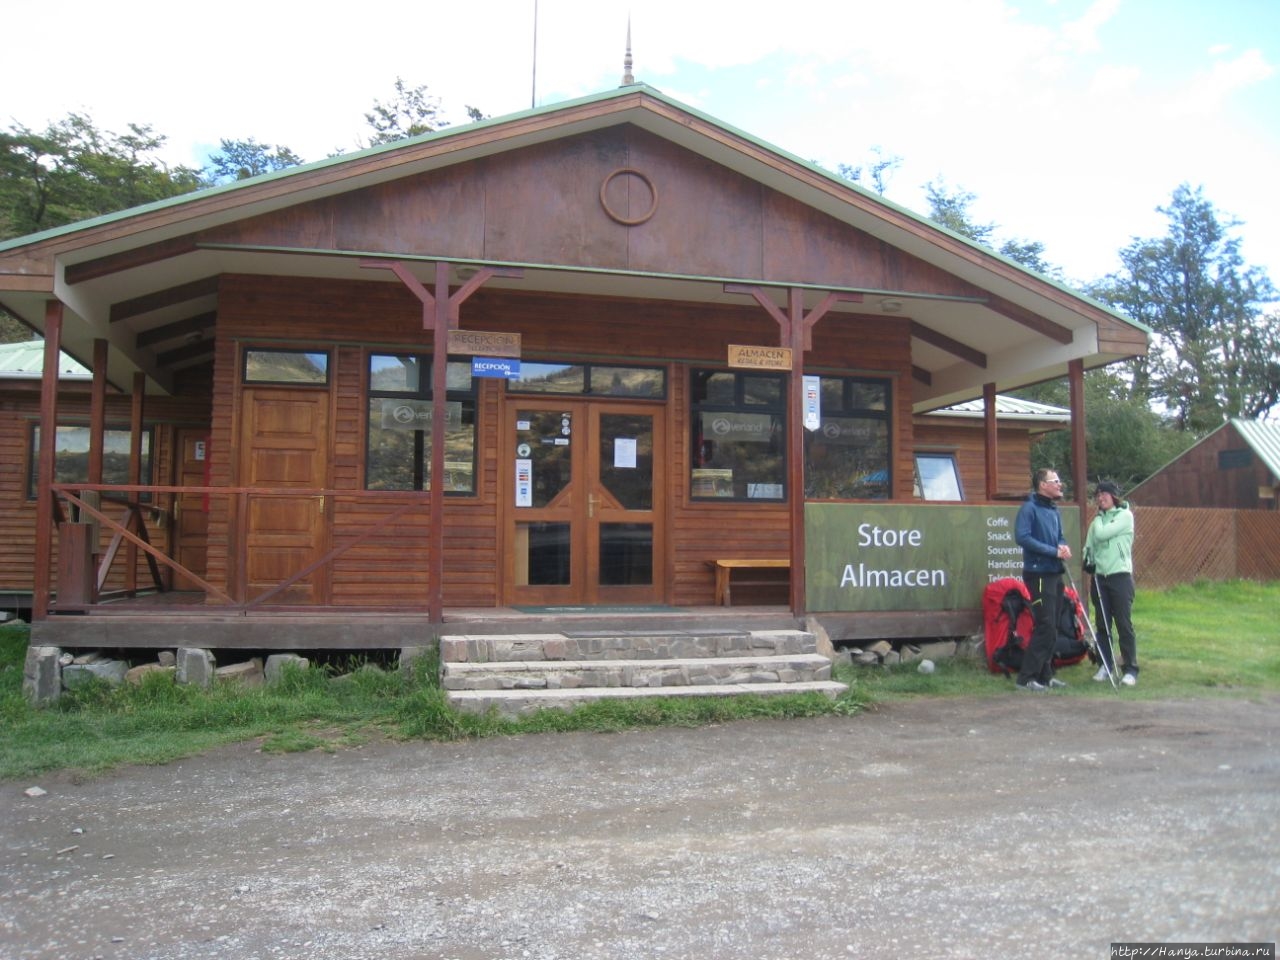 Кафе Parrilla Pehoe Национальный парк Торрес-дель-Пайне, Чили